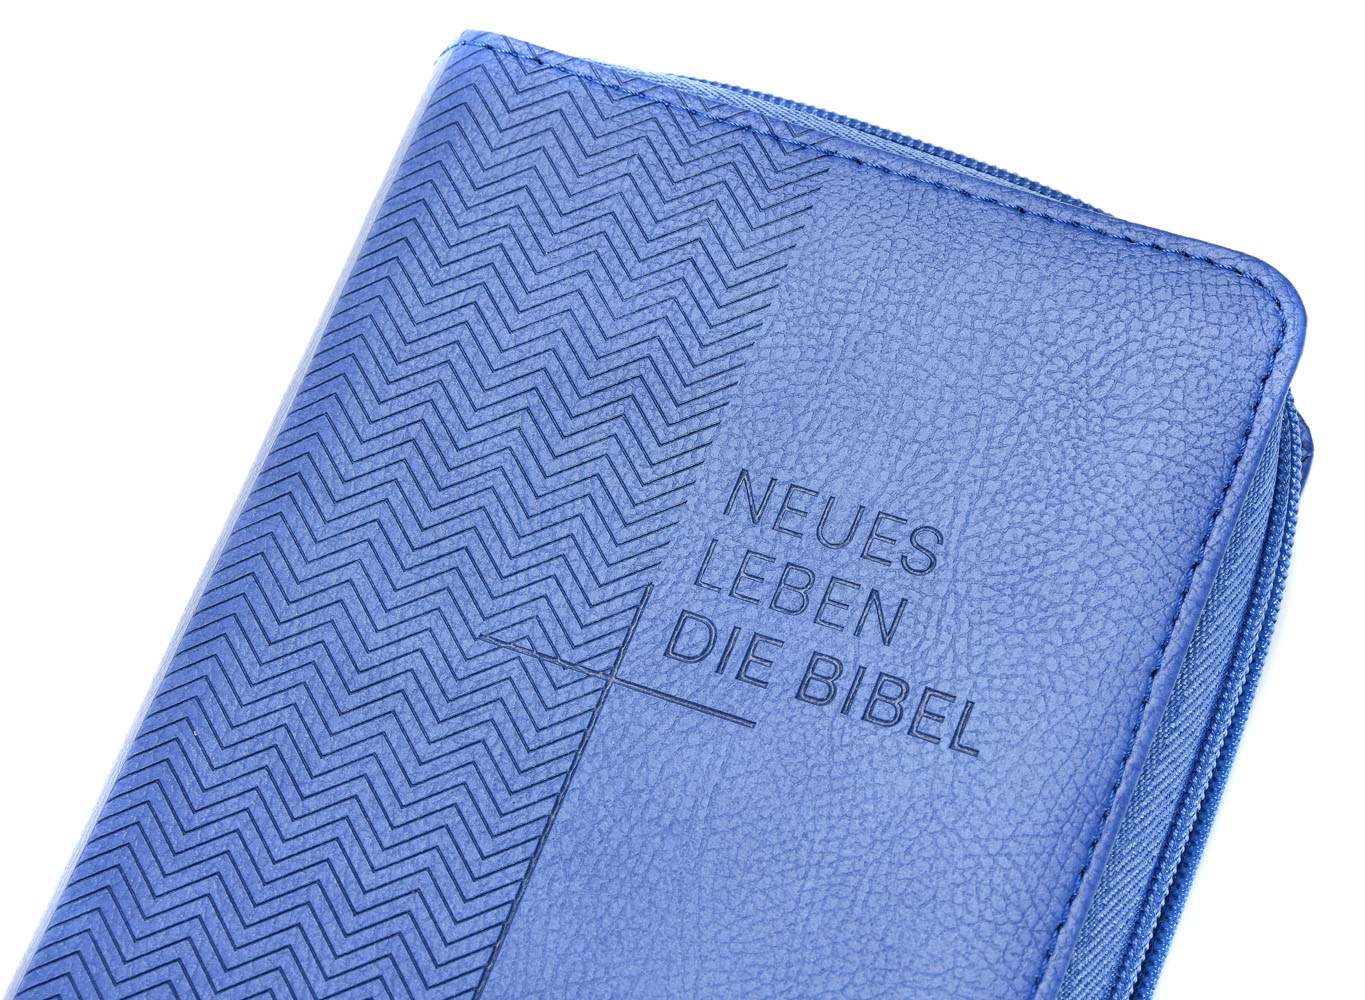 Neues Leben. Die Bibel - Taschenausgabe - Kunstleder mit Reißverschluss